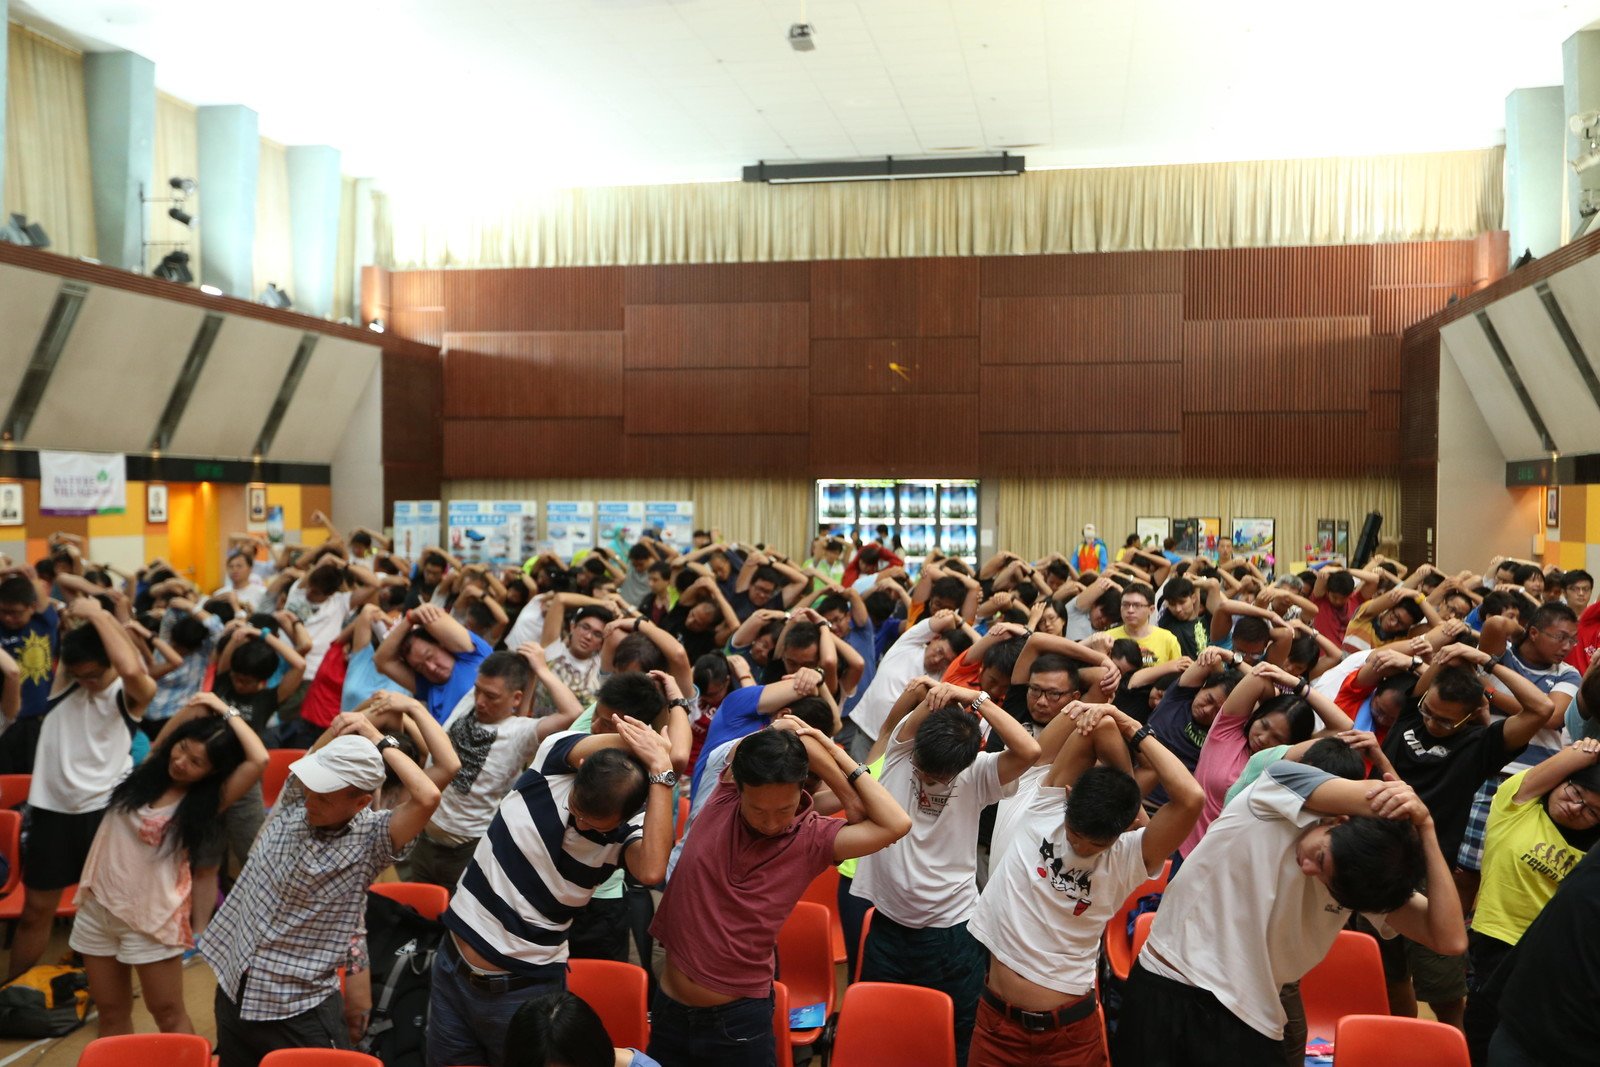 逾300位参加者在「乐施毅行者2014」简介会上进行伸展热身练习